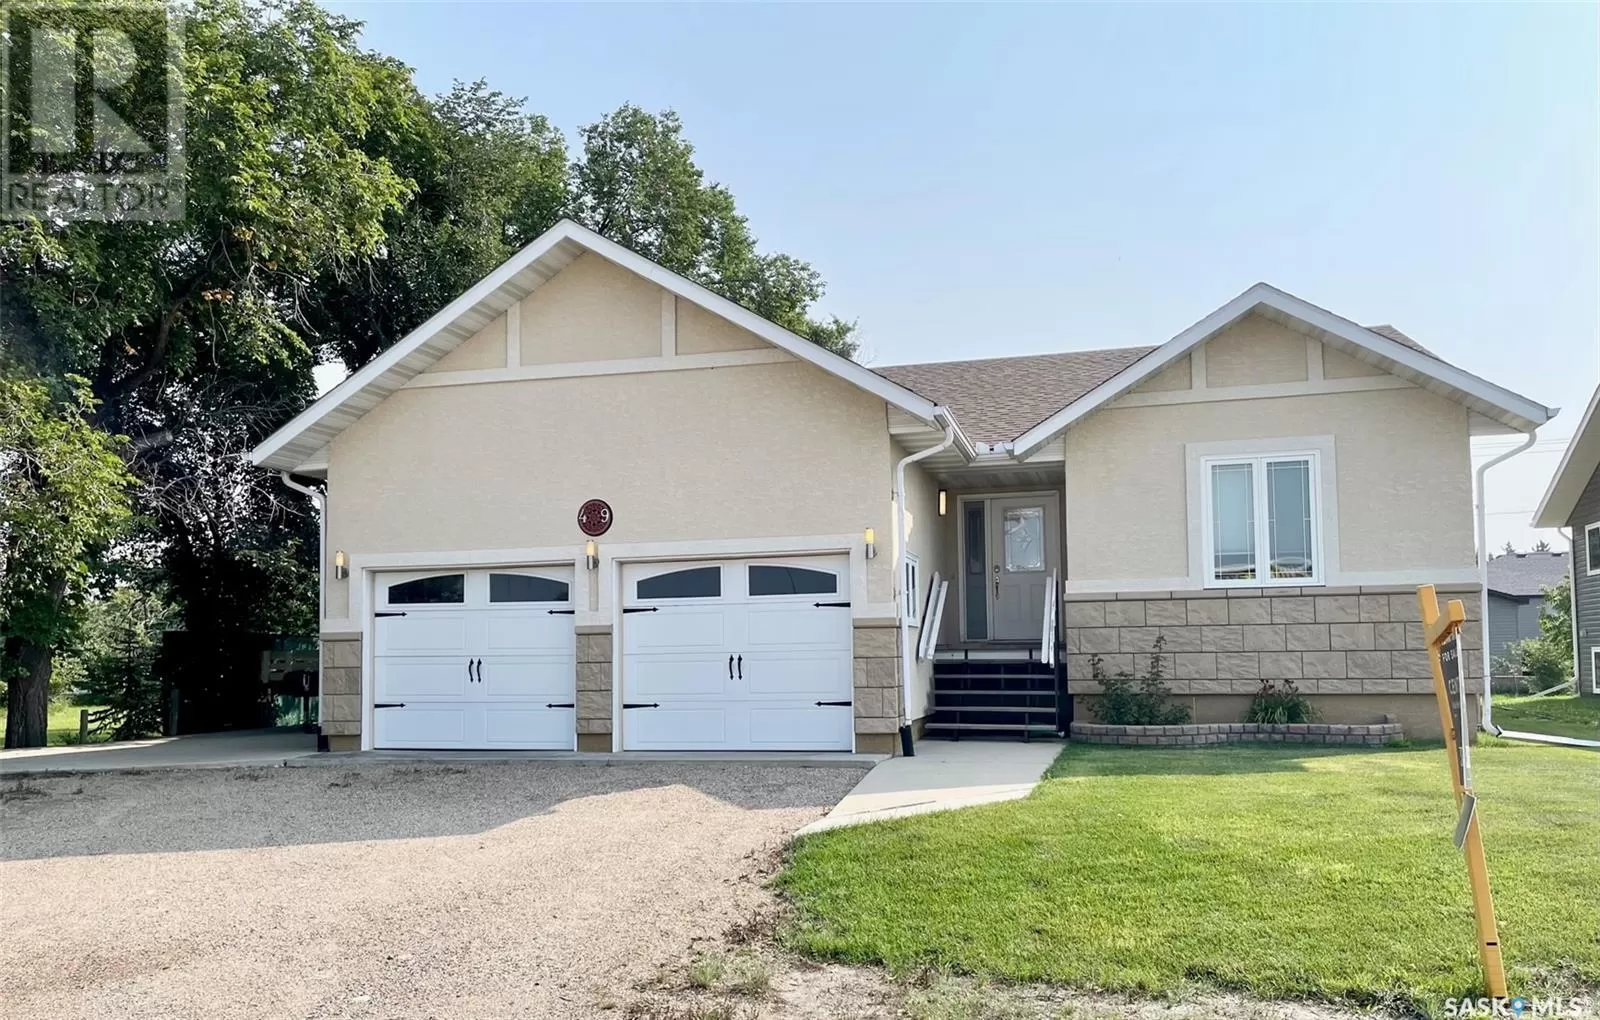 House for rent: 49 Lawrence Avenue E, Yorkton, Saskatchewan S3N 2V6